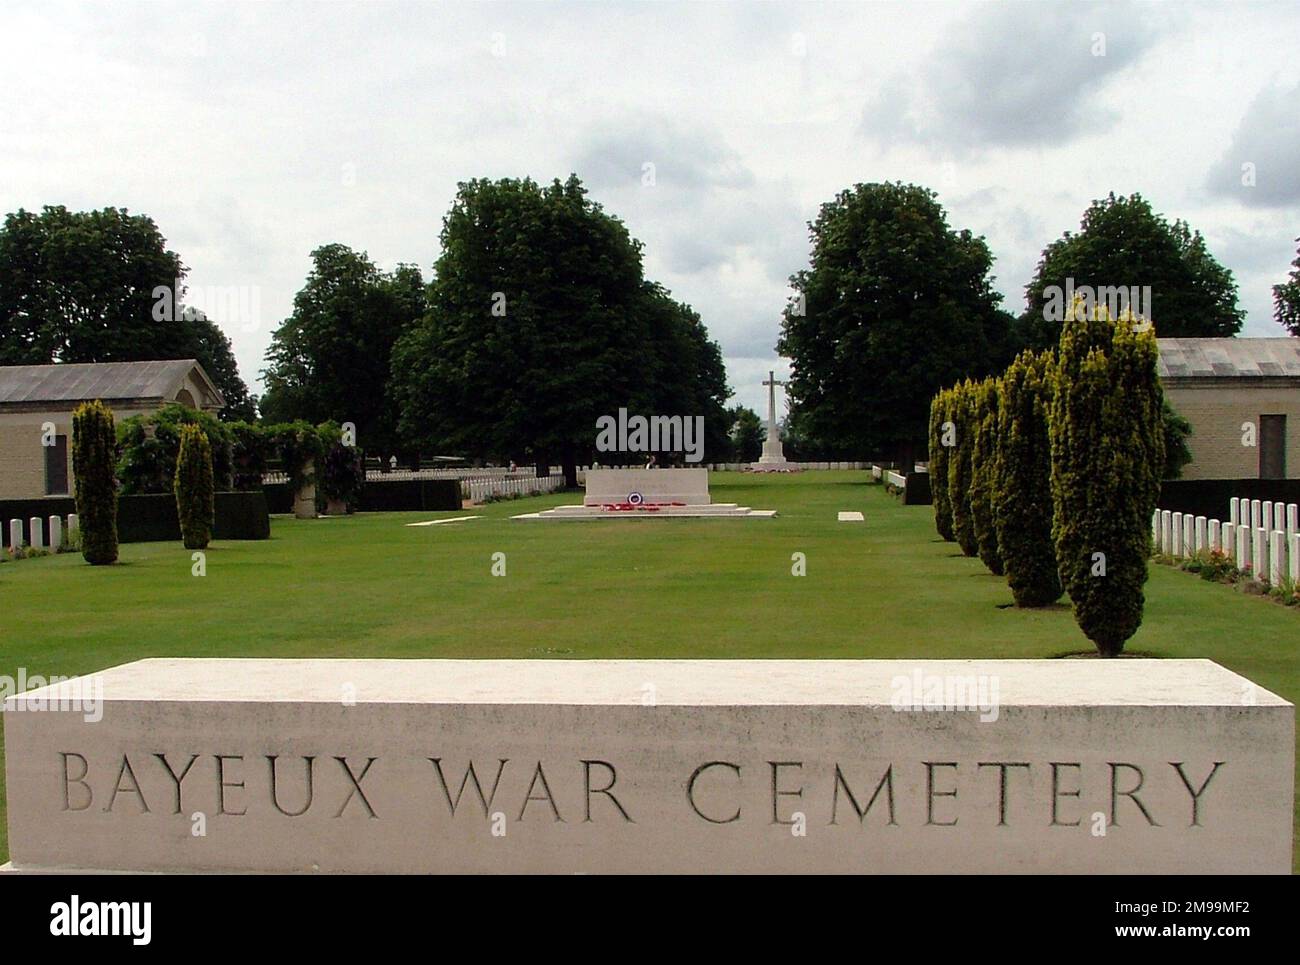 Ce cimetière de graves de guerre du Commonwealth est le plus grand cimetière britannique de WW2 en France. Il contient 4 648 tombes - 3 935 du Royaume-Uni, 181 du Canada, 17 de l'Australie, 8 de la Nouvelle-Zélande, 1 de l'Afrique du Sud, 25 de la Pologne, 3 de la France, 2 de la Tchécoslovaquie, 2 de l'Italie, 7 de Russie, 466 d'Allemagne et un non identifié. Banque D'Images